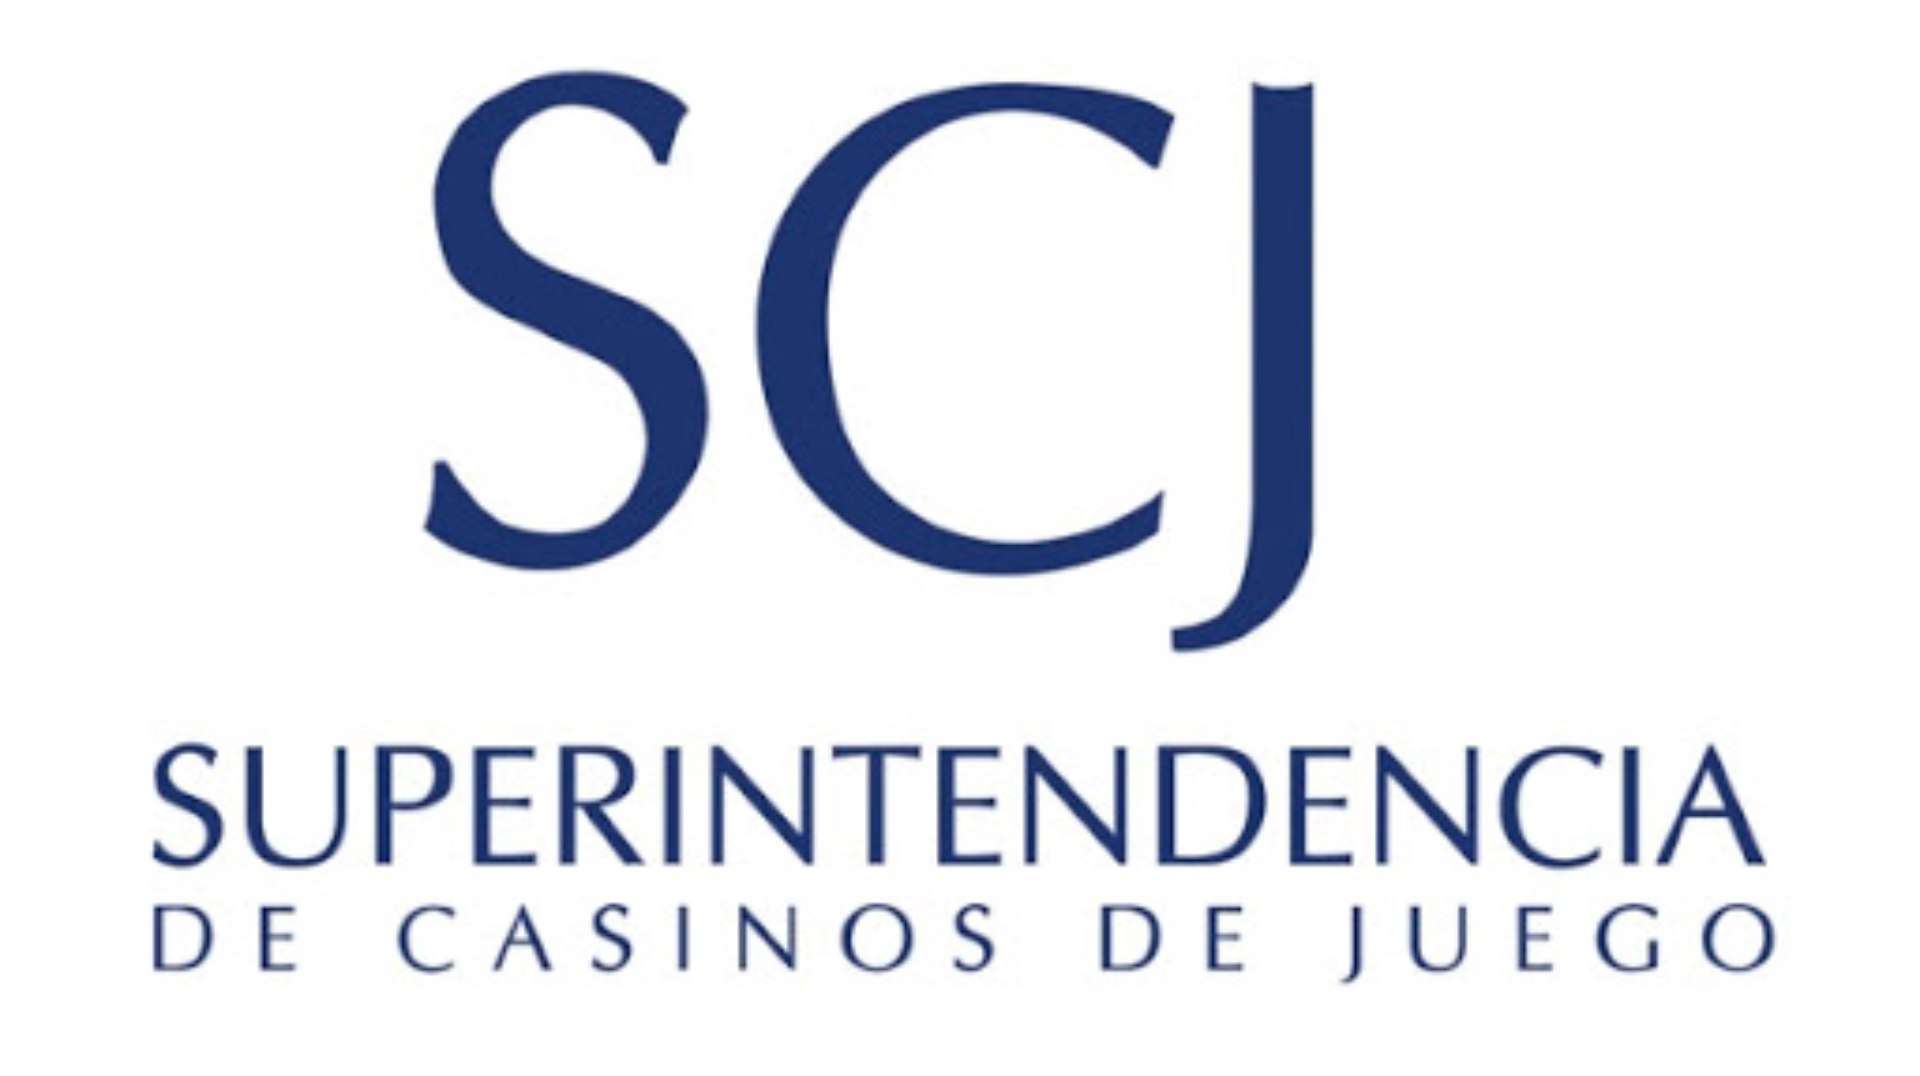 A Superintendencia de Casinos de Juego de Chile estará presente na SAGSE Latam nos dias 30 e 31/03.